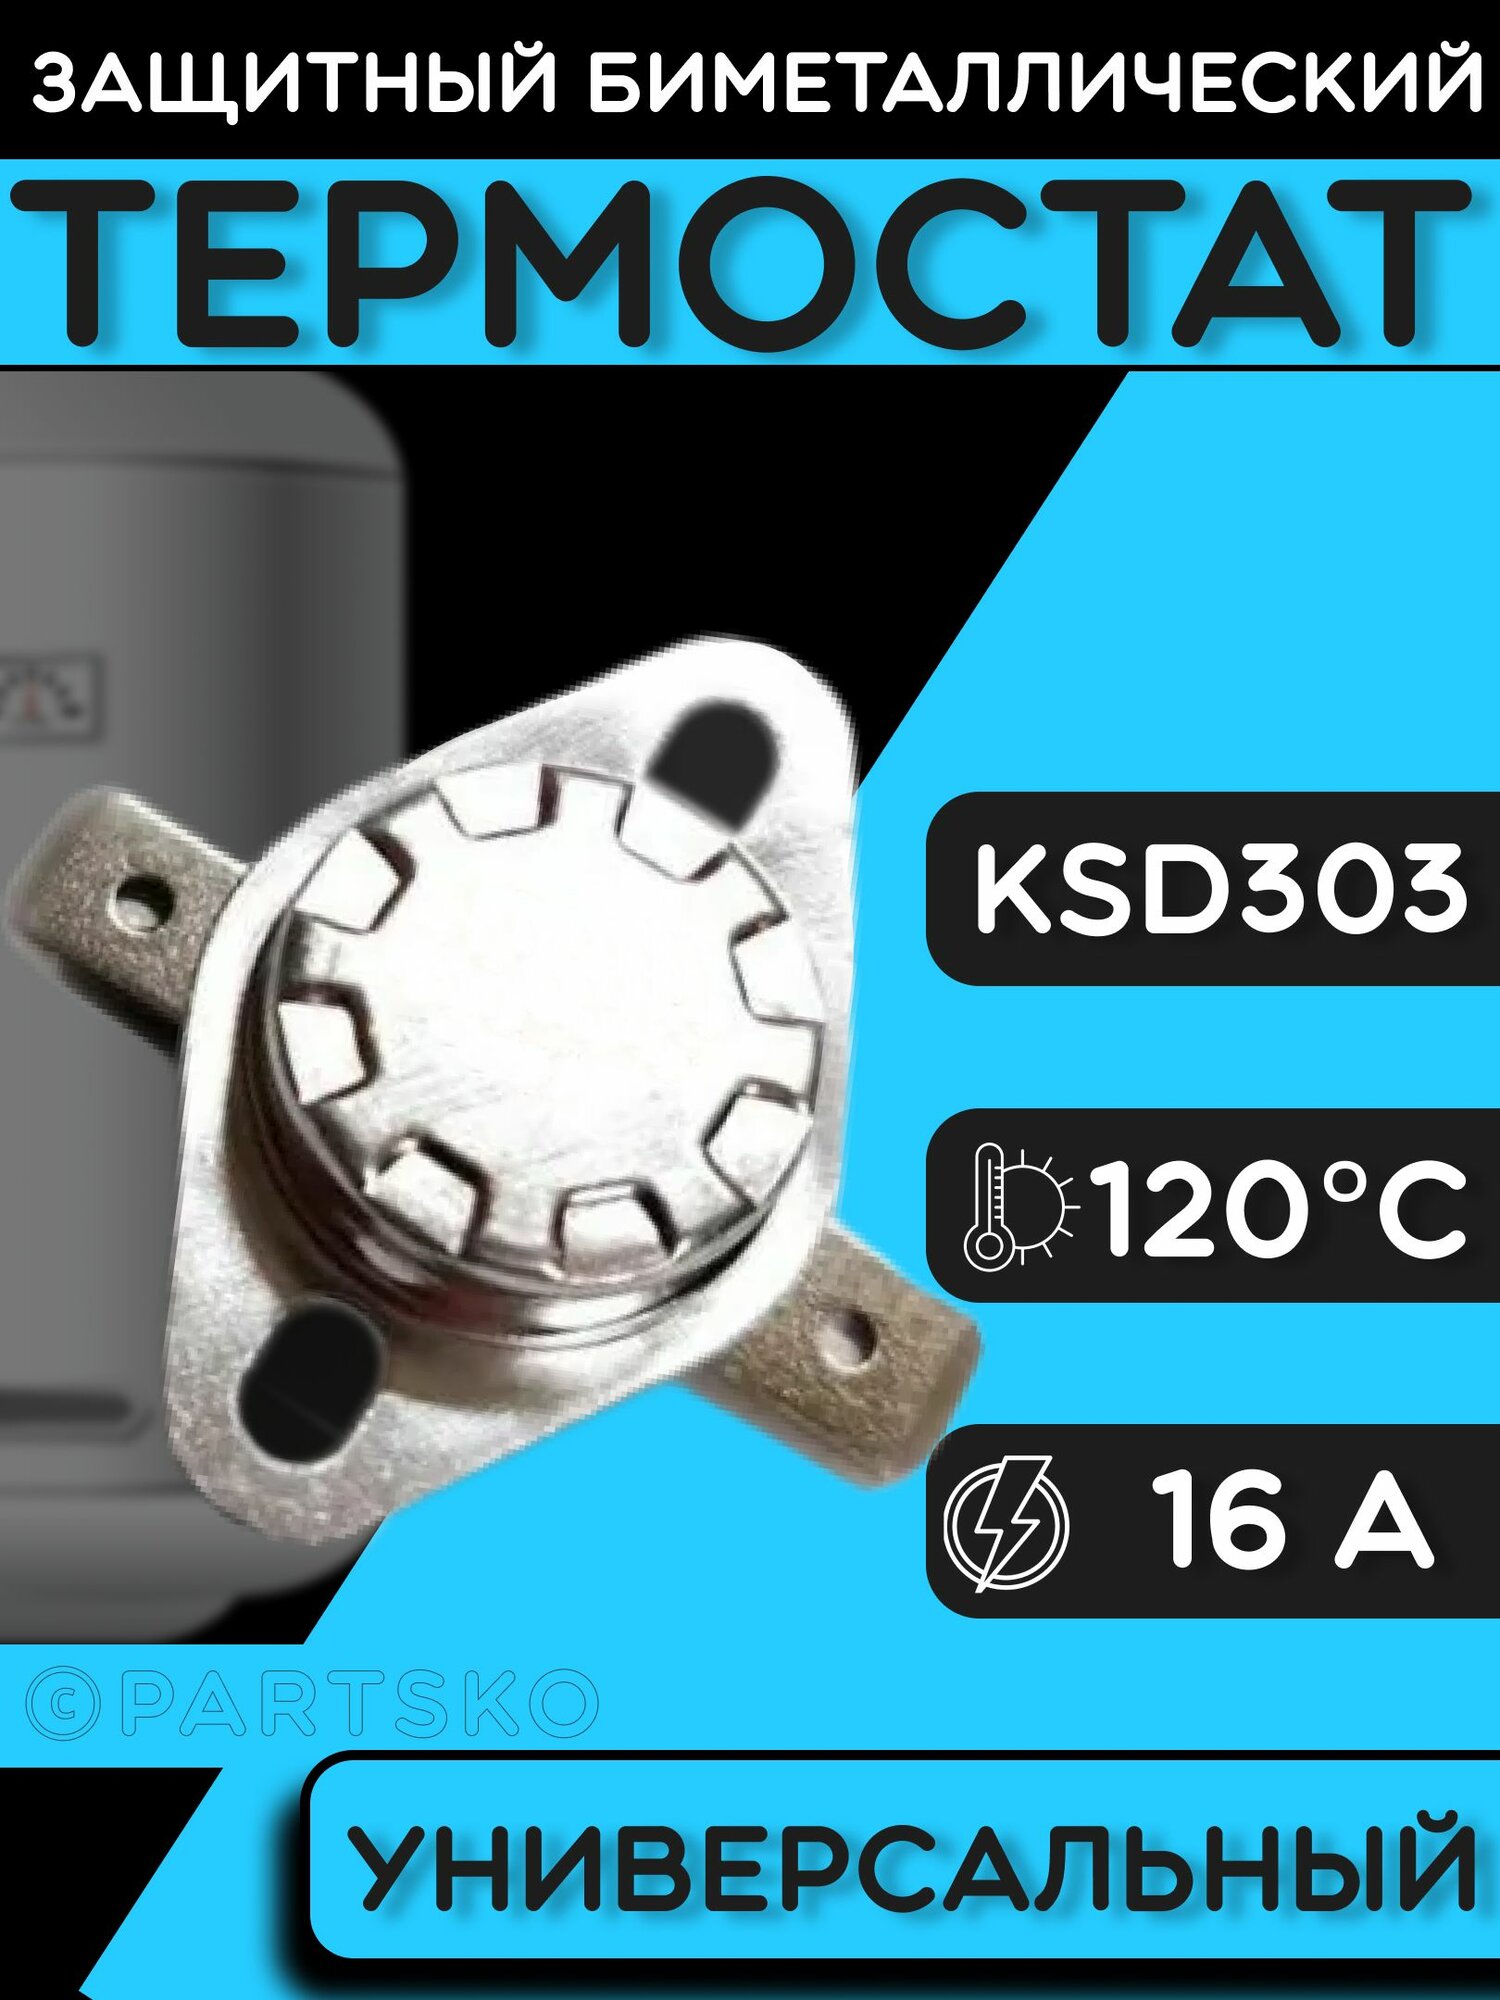 Термостат для водонагревателя биметаллический KSD302, 16A, до 120 градусов. Термодатчик / регулятор температуры универсальный, самовозвратный.